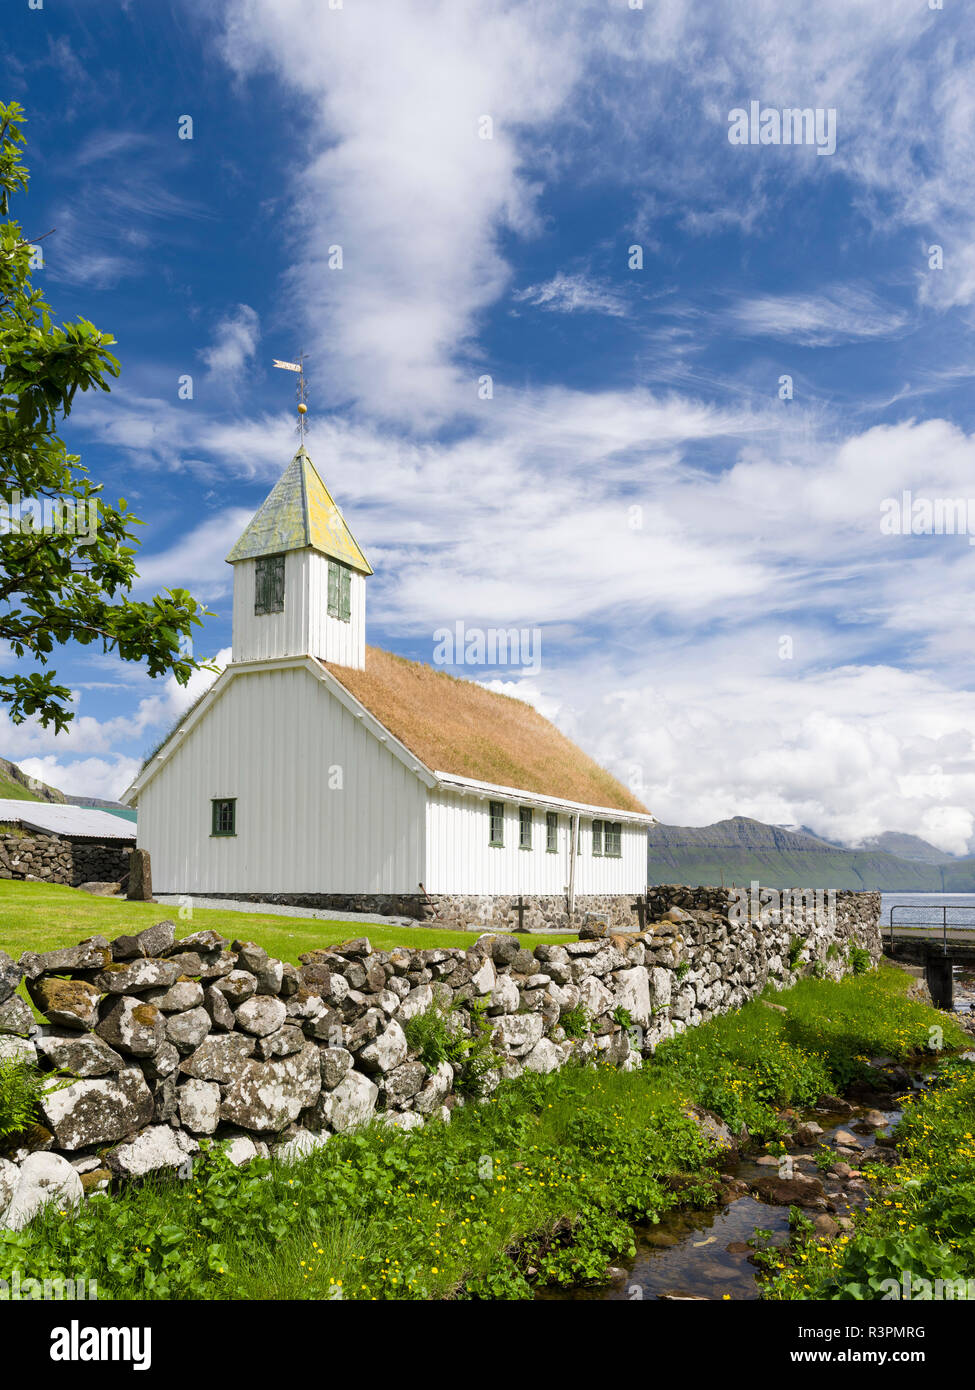 Traditionelle Kirche im Dorf Oyndarfjordur, im Hintergrund die Berge der Insel Kalsoy. Nordeuropa : Dänemark Stockfoto